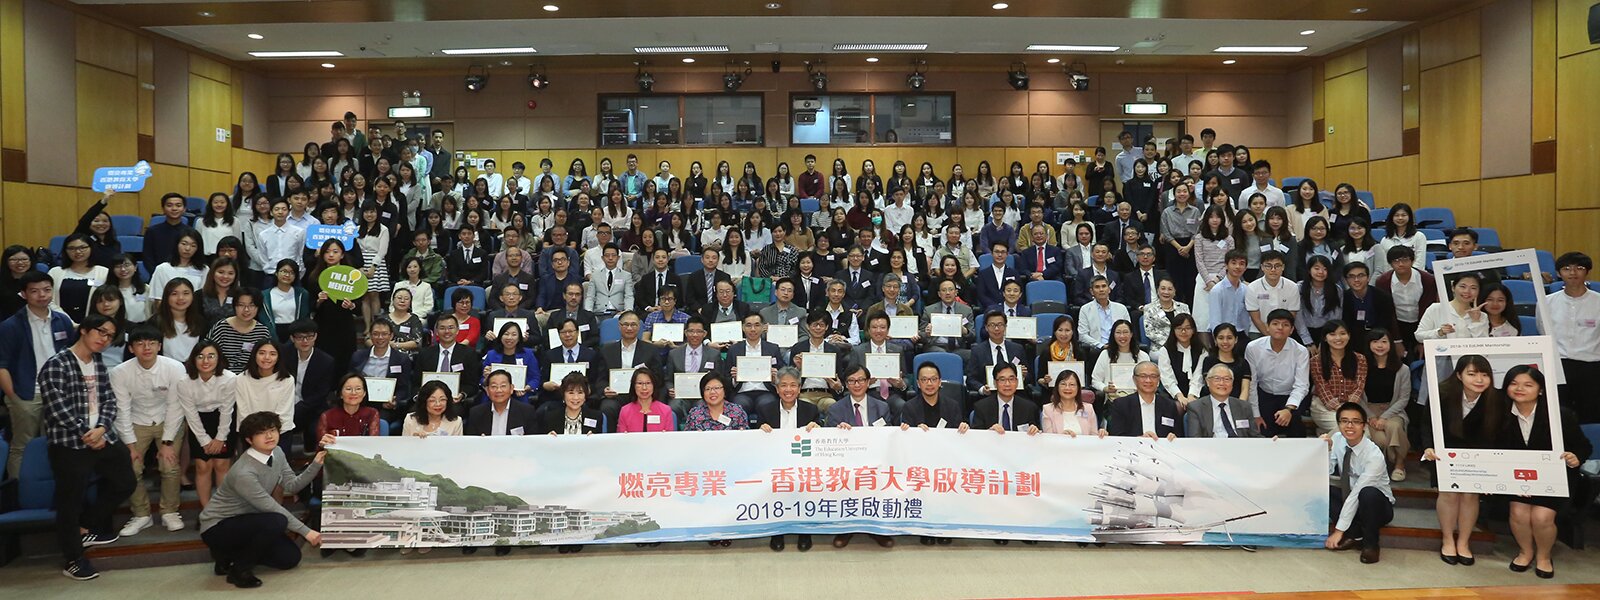 「燃亮专业—香港教育大学启导计划」2018-19年度启动礼